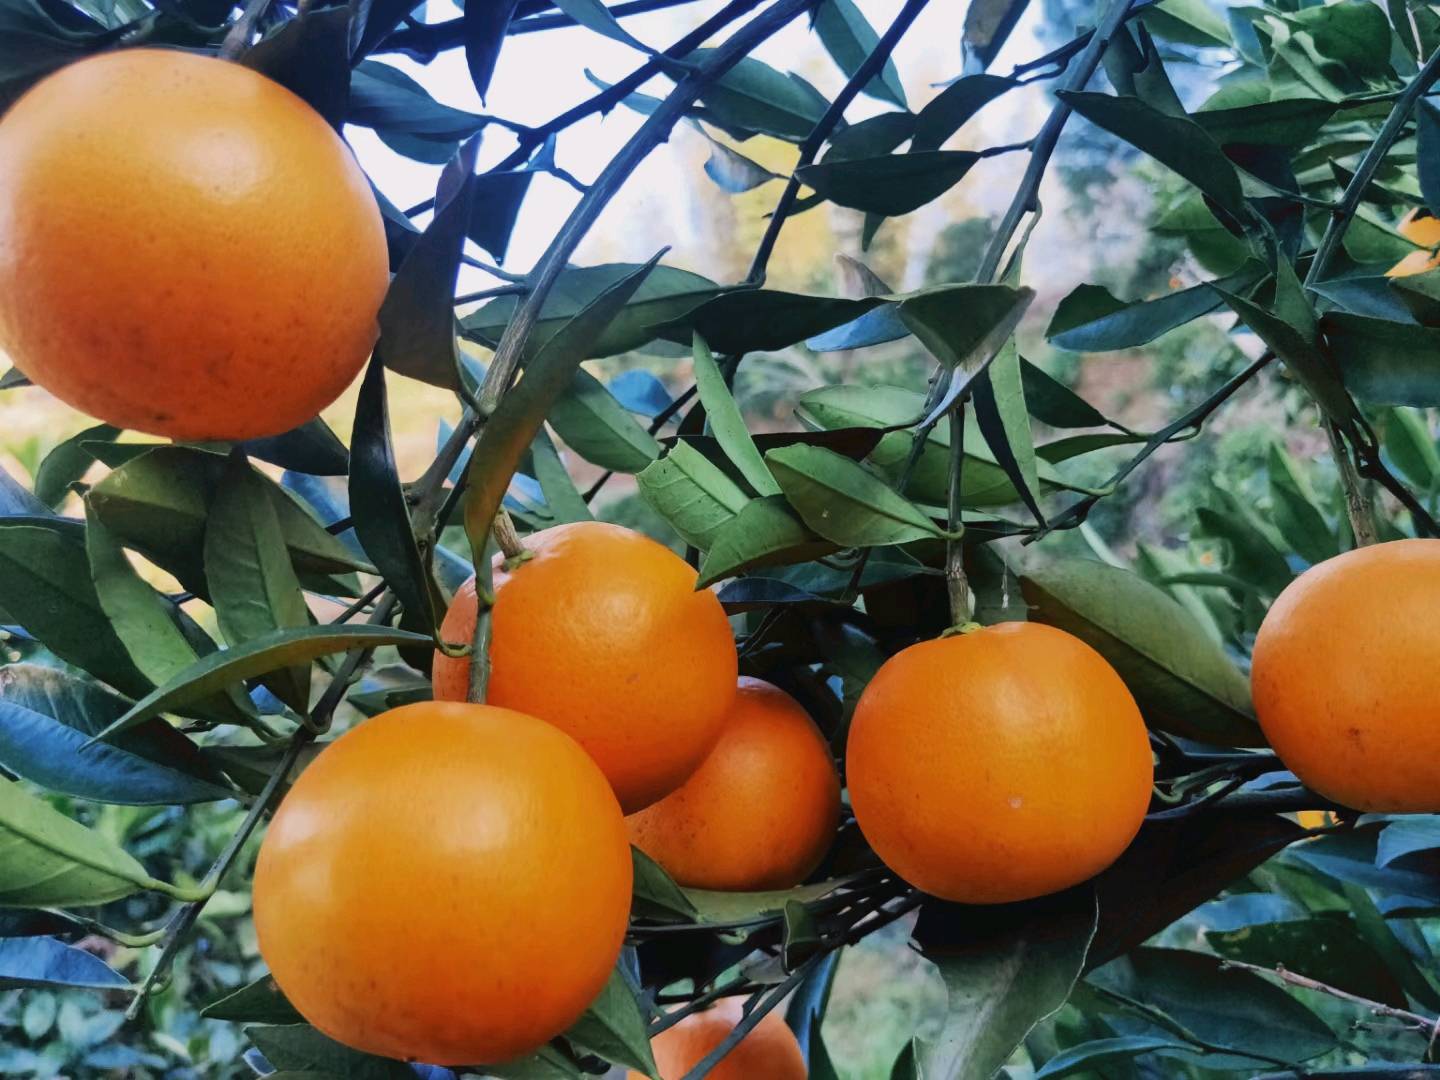 橙心橙意~正宗黔阳冰糖橙！
自家种植，纯天然，无污染。
现摘现发新鲜果子！
价格实惠，服务到位！
需要的私信哦